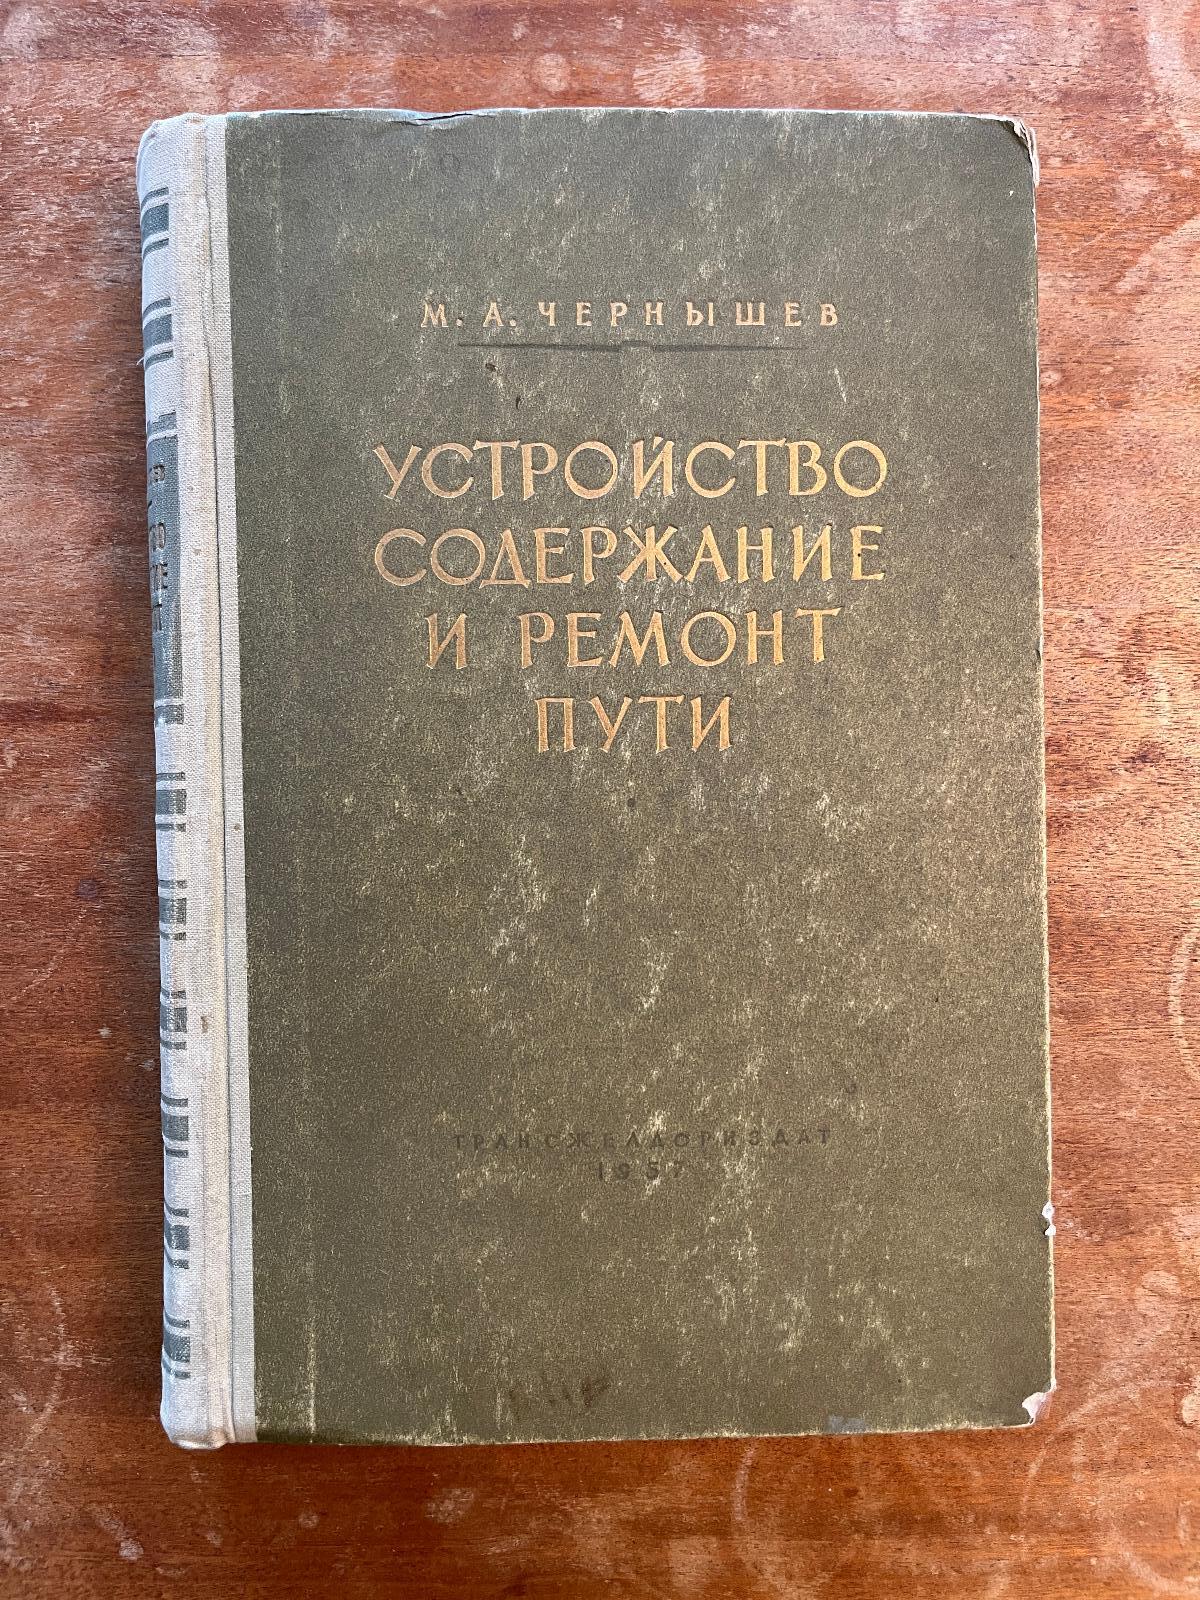 Cudzojazyčná železničná literatúra (1957) (s) - Knihy